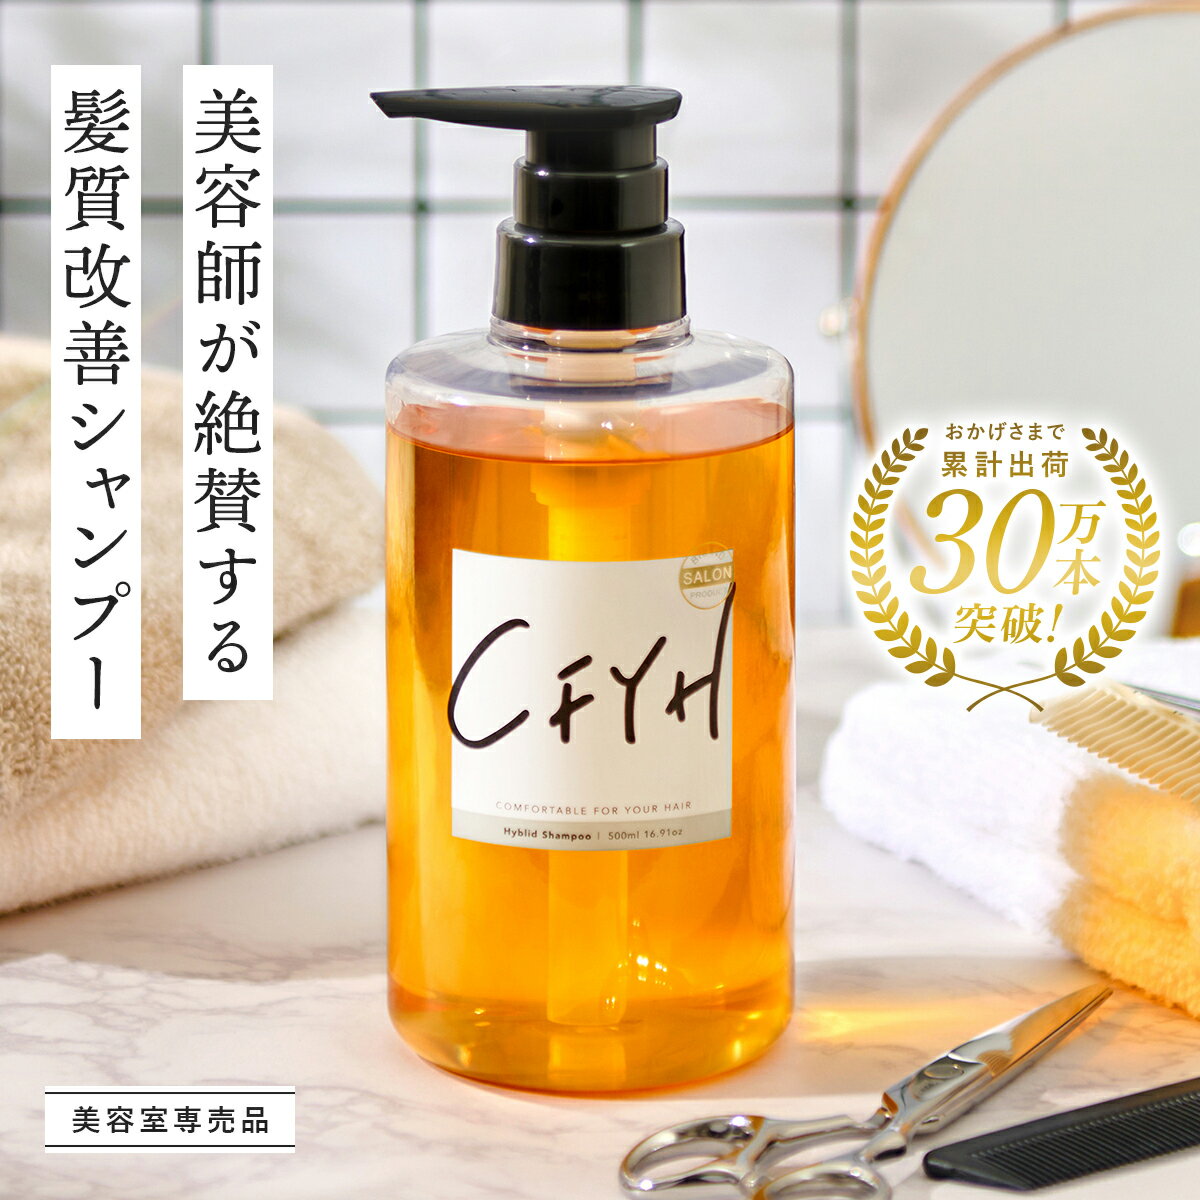 【100個】 gh コンディショニングシャンプー 13種類の植物オイル シトラスの香り ノンシリコン 使い切り 個包装 日本製 業務用 ホテル アメニティ